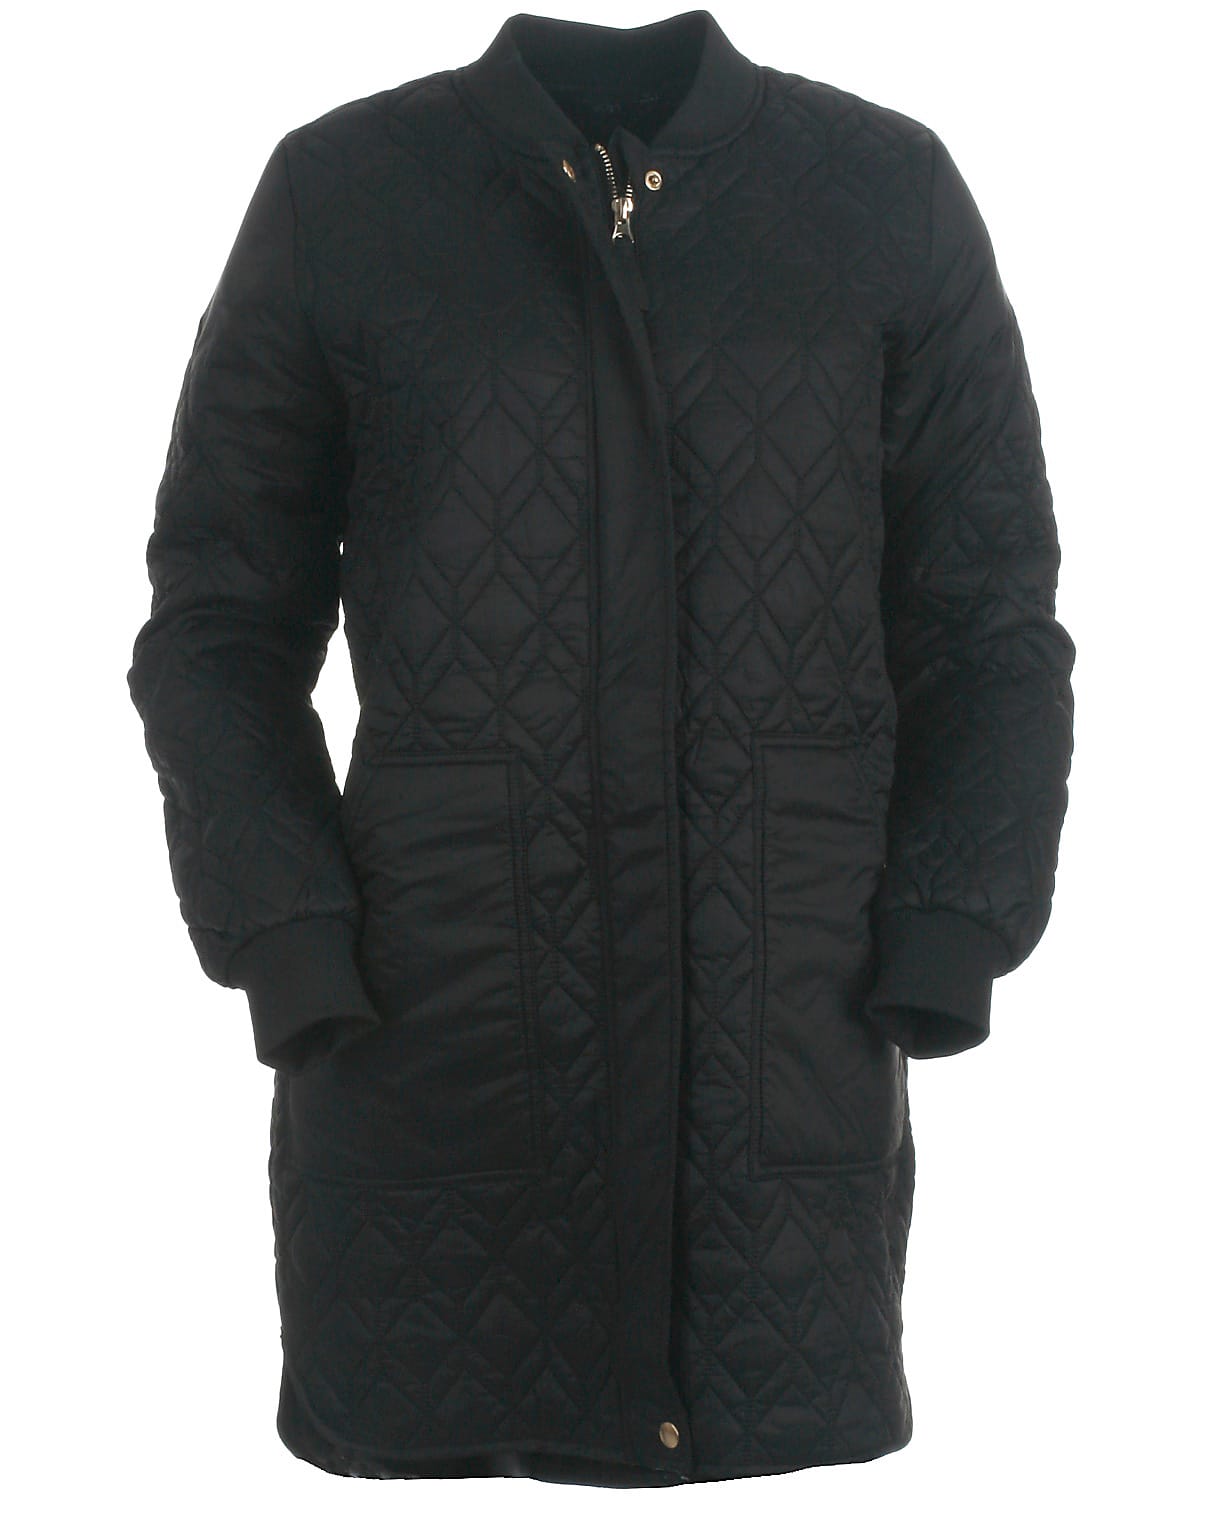 Petit By Sofie Schnoor jakke, black. Bløde, varme og vinterjakker her!